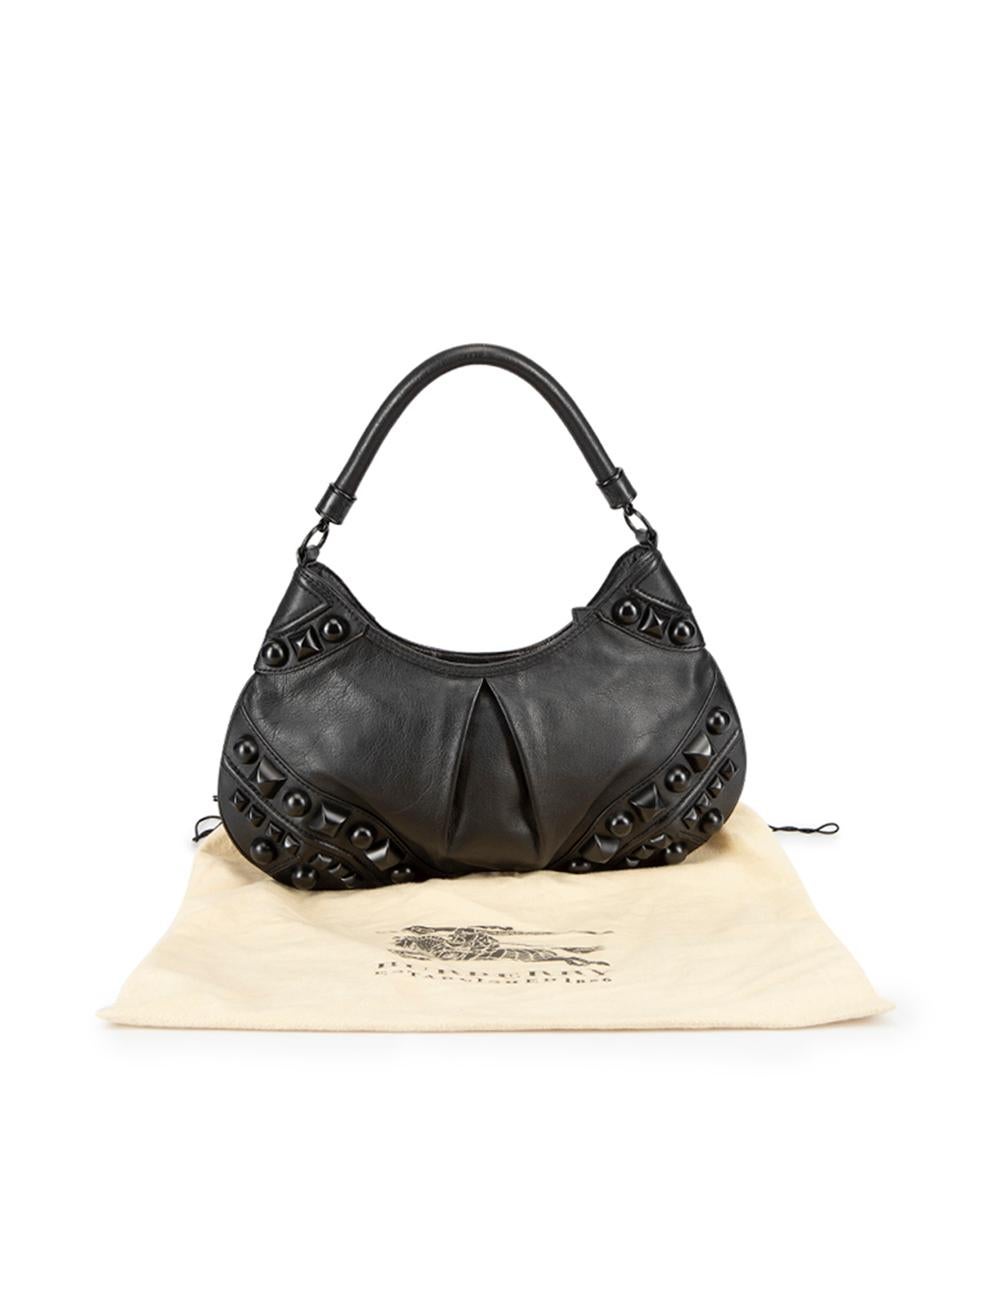 Burberry Women's Black Leather Alverton Studded Hobo Bag 6